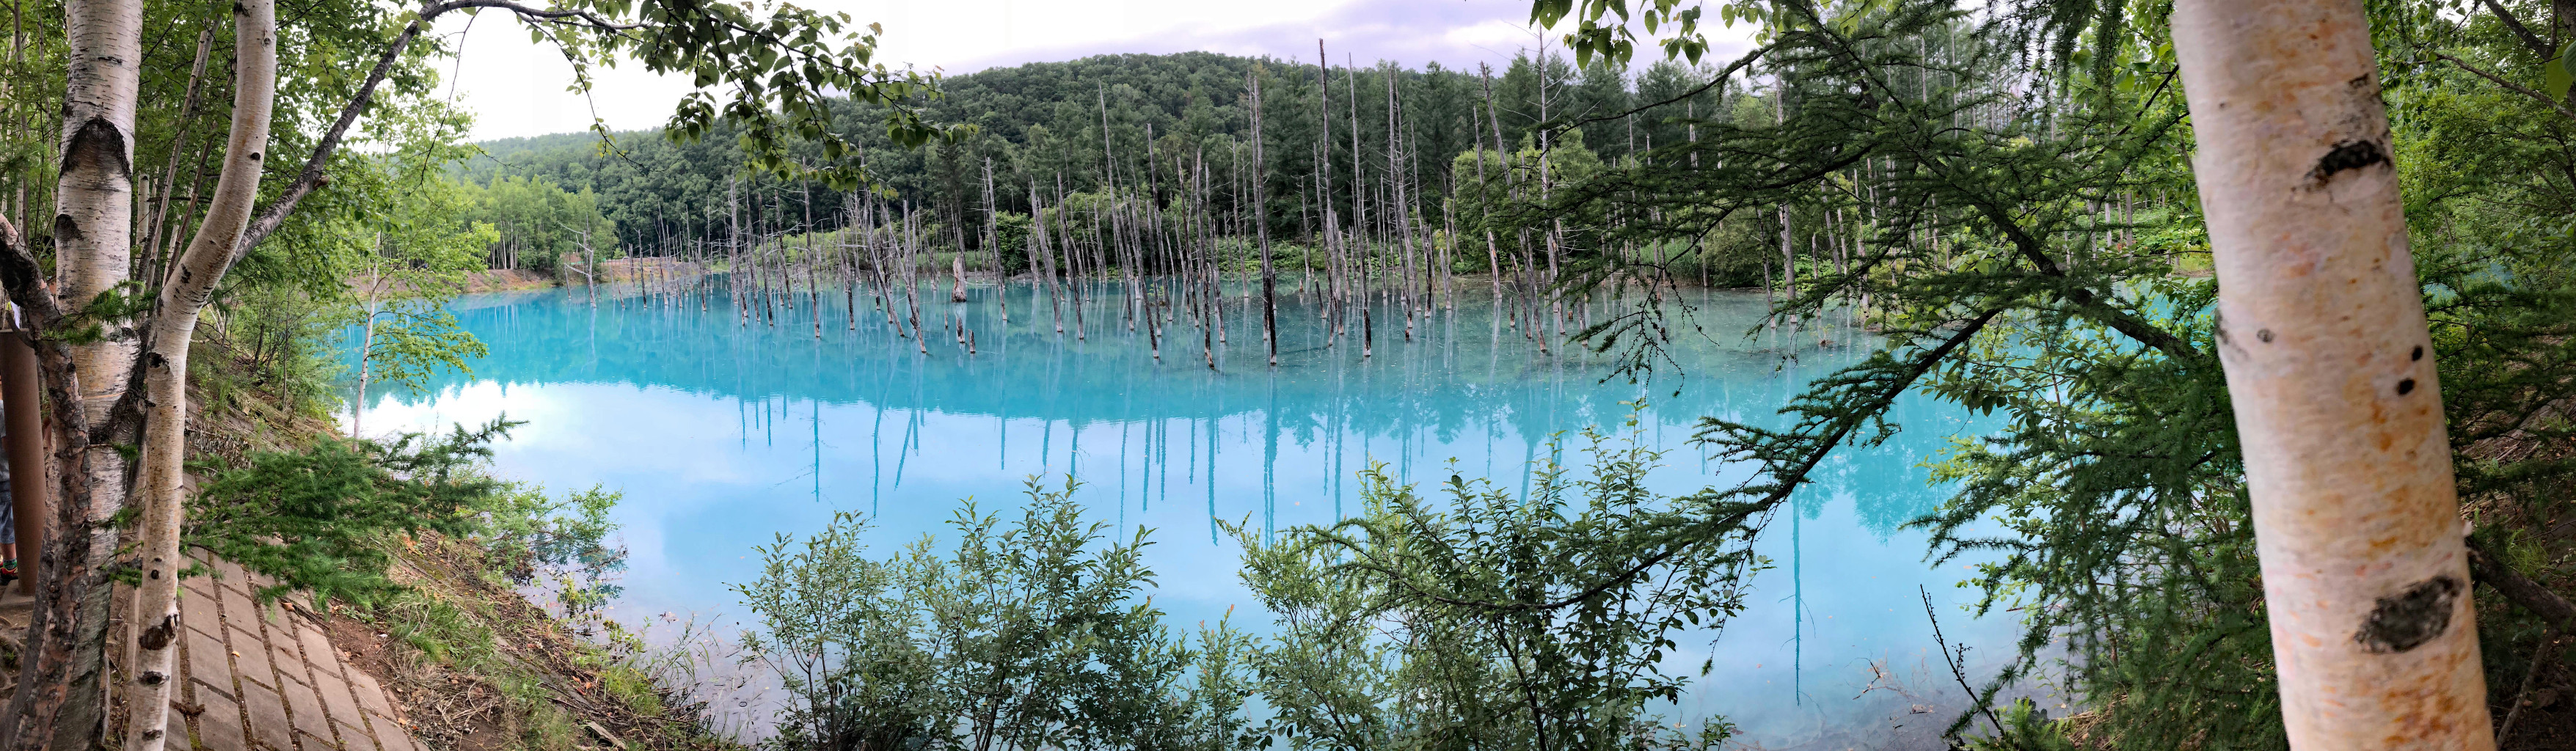 青い池全景